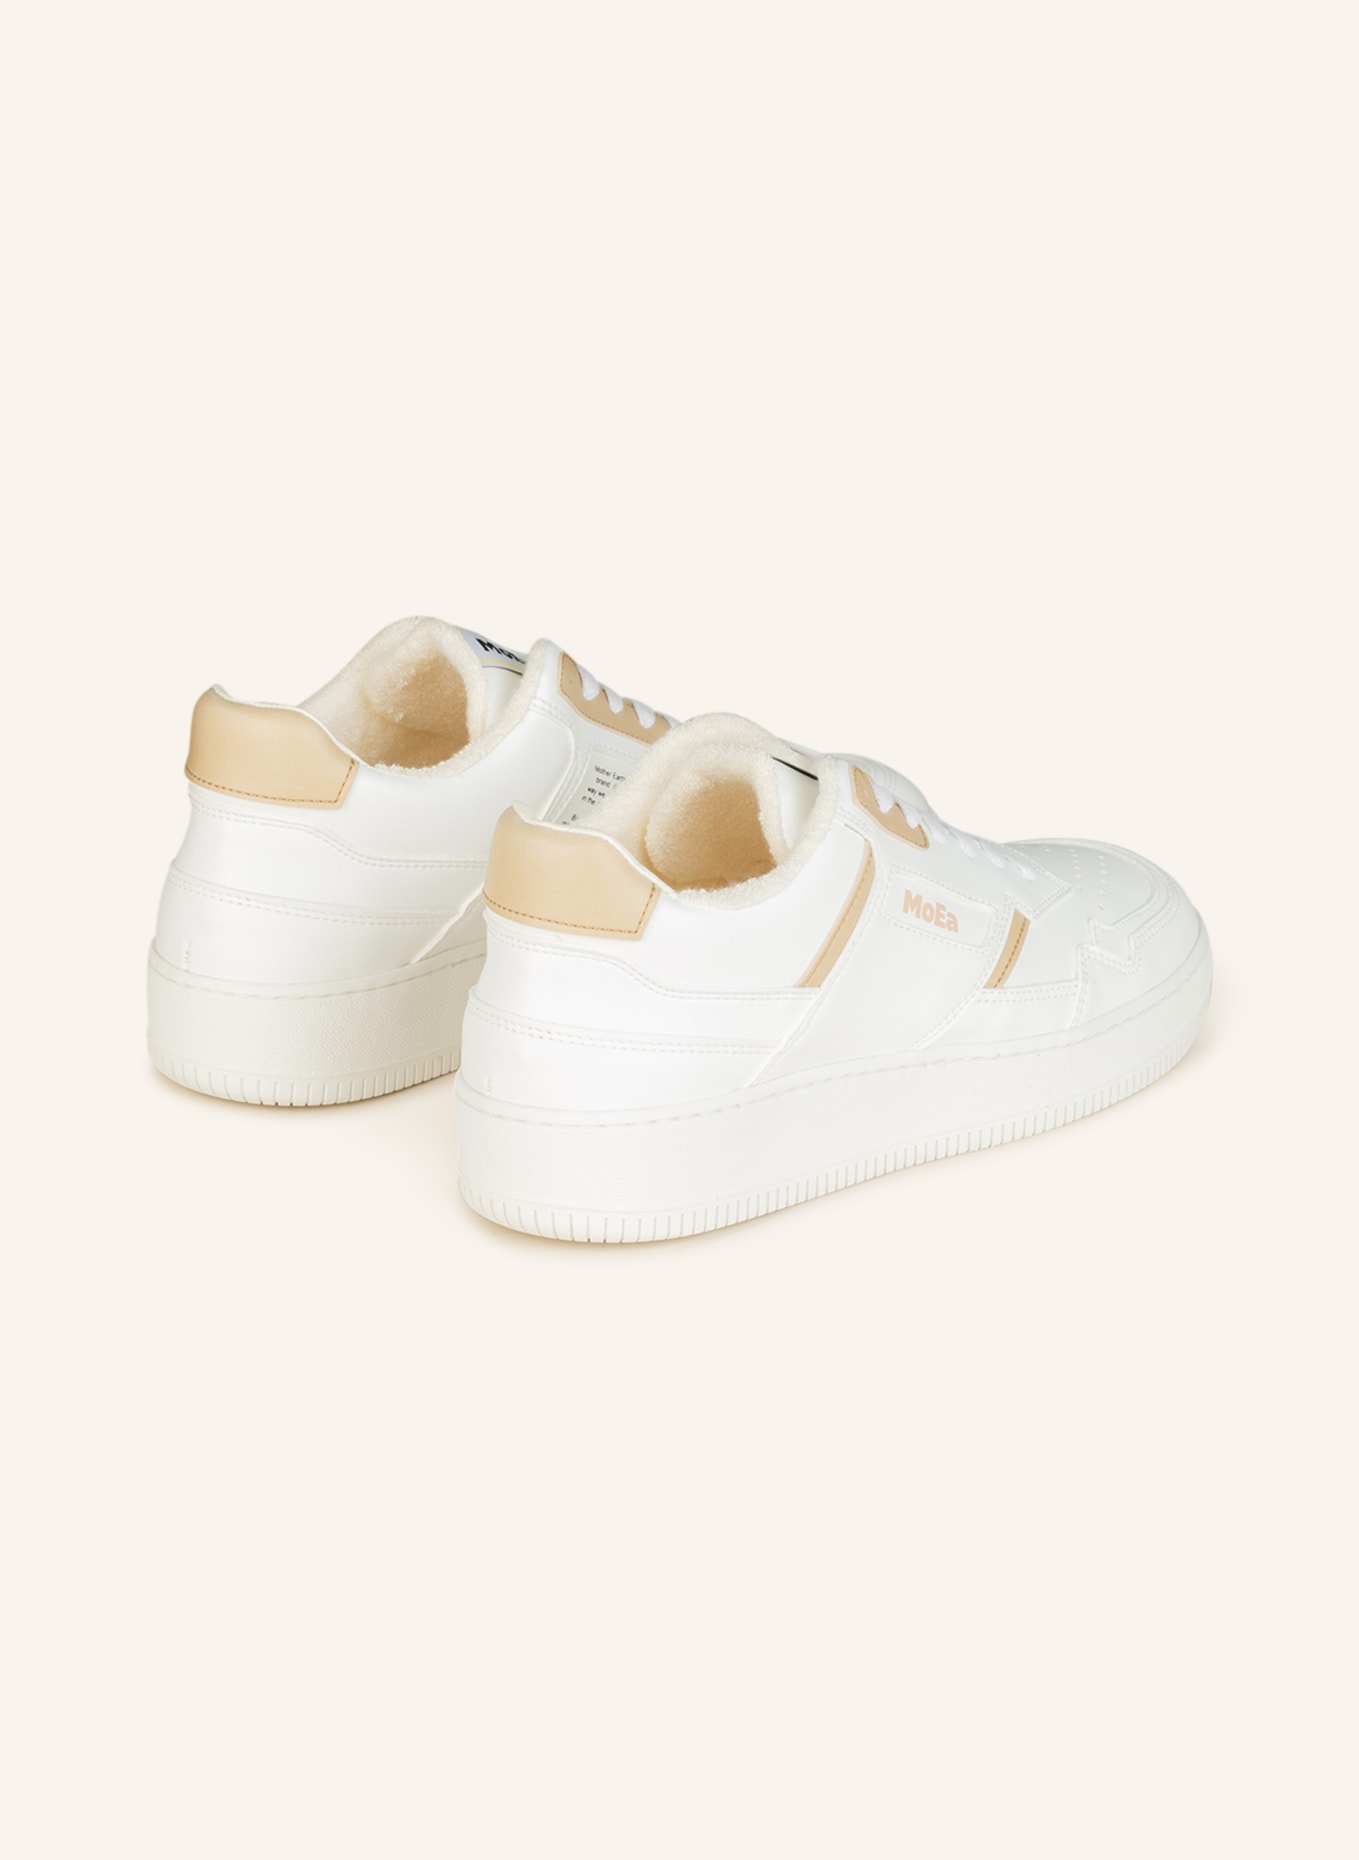 MoEa Sneakers GEN1, Color: WHITE (Image 2)